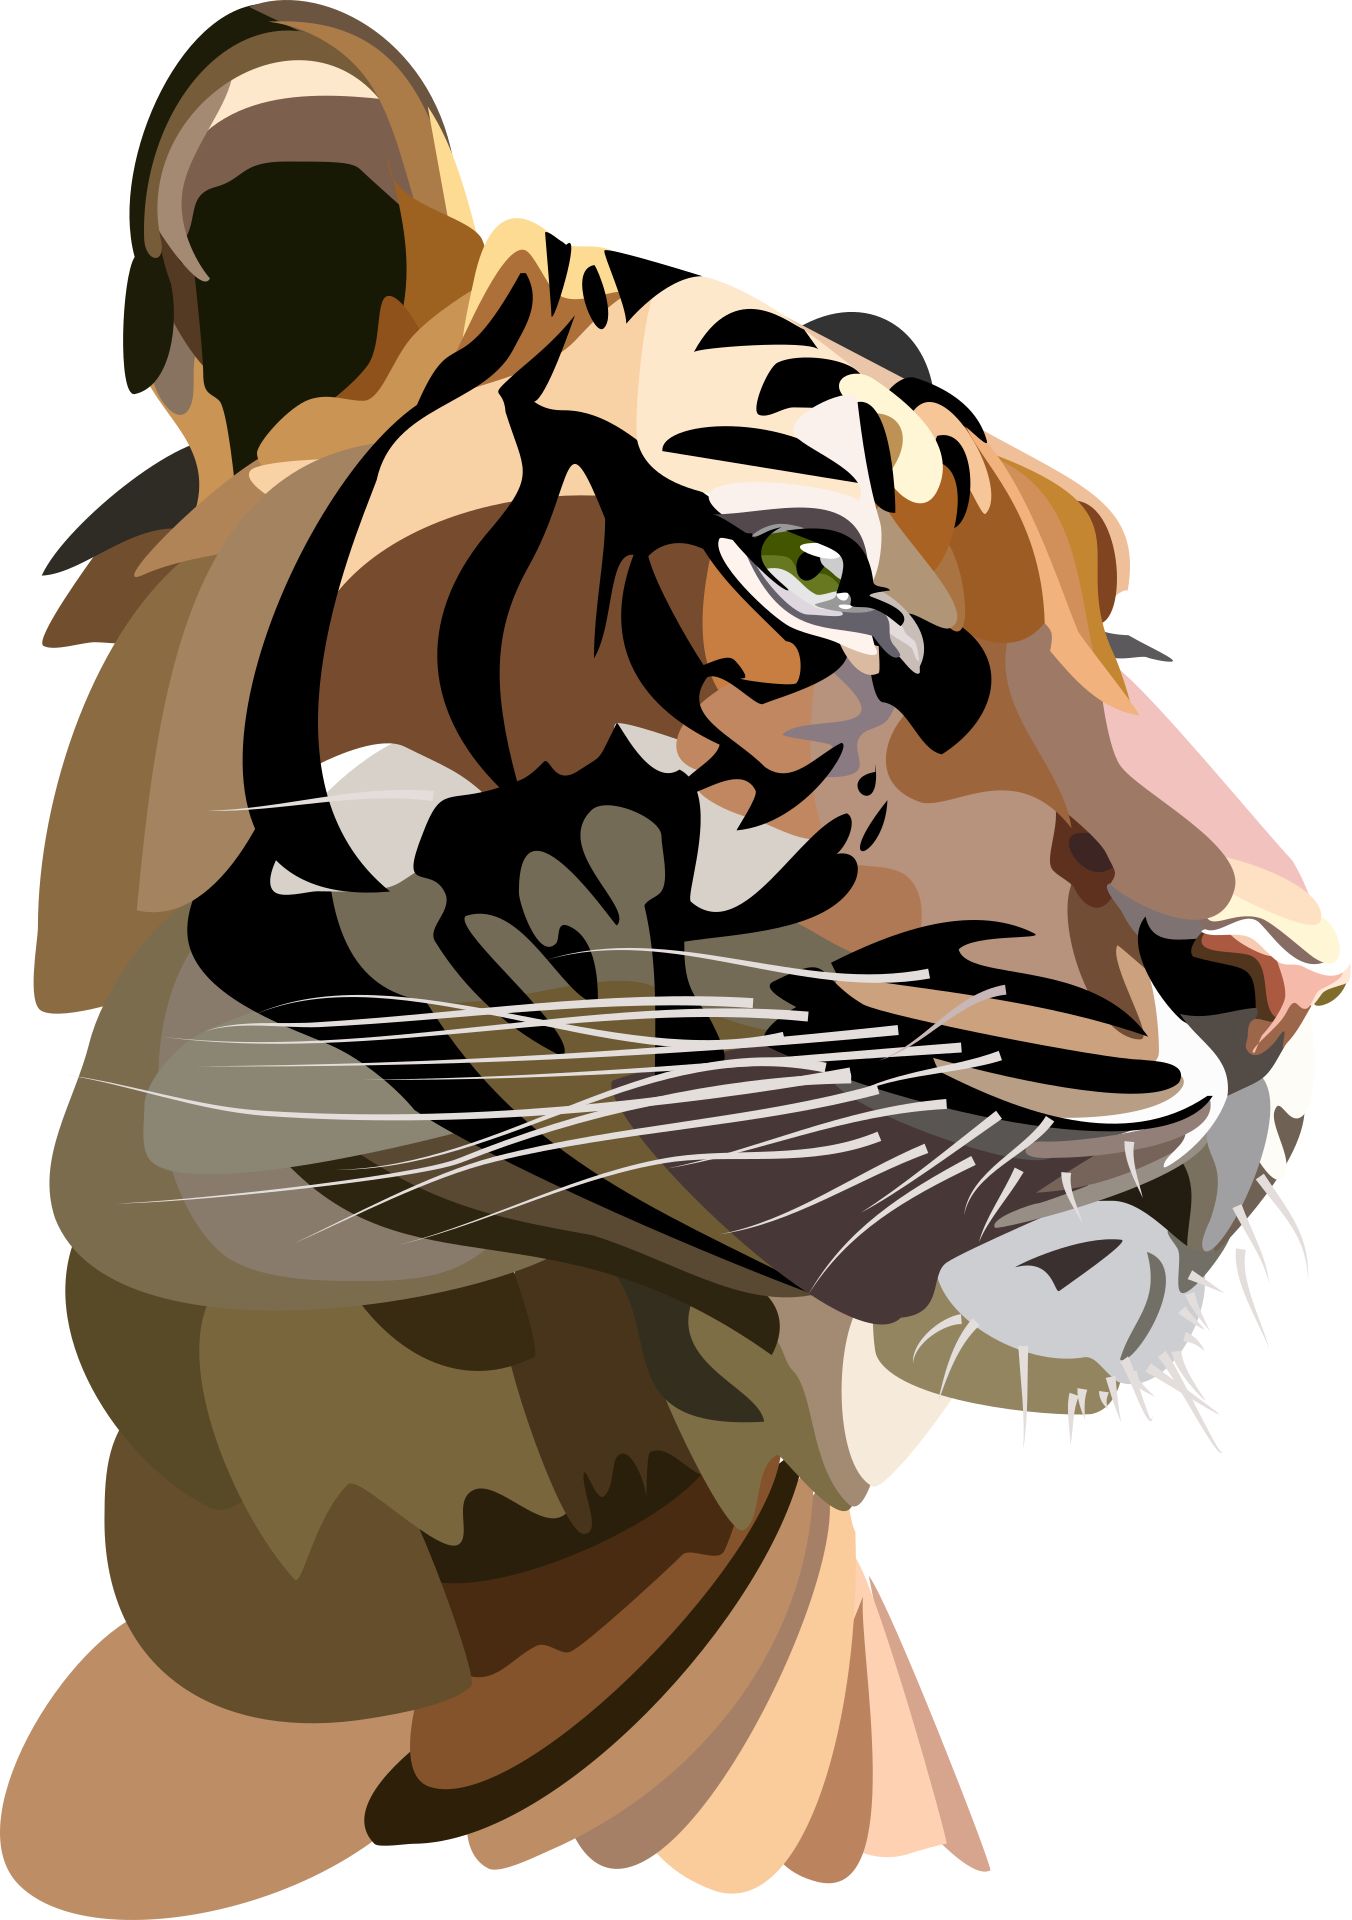  imagen de la cara de un tigre